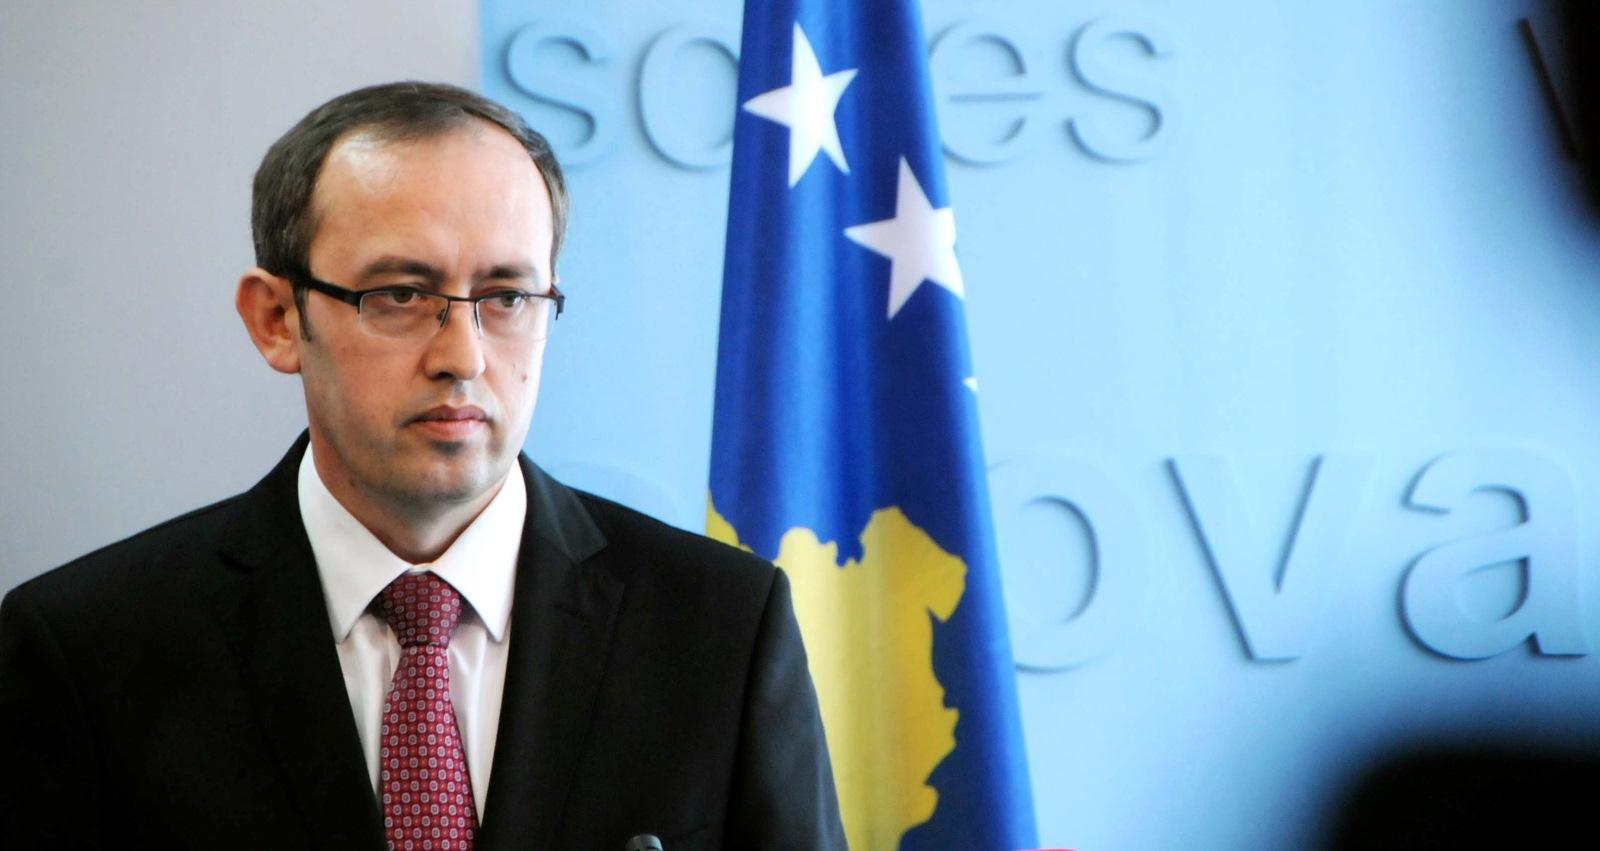 Zbog podignute optužnice premijer Kosova Avdulah Hoti otkazao put u Vašington